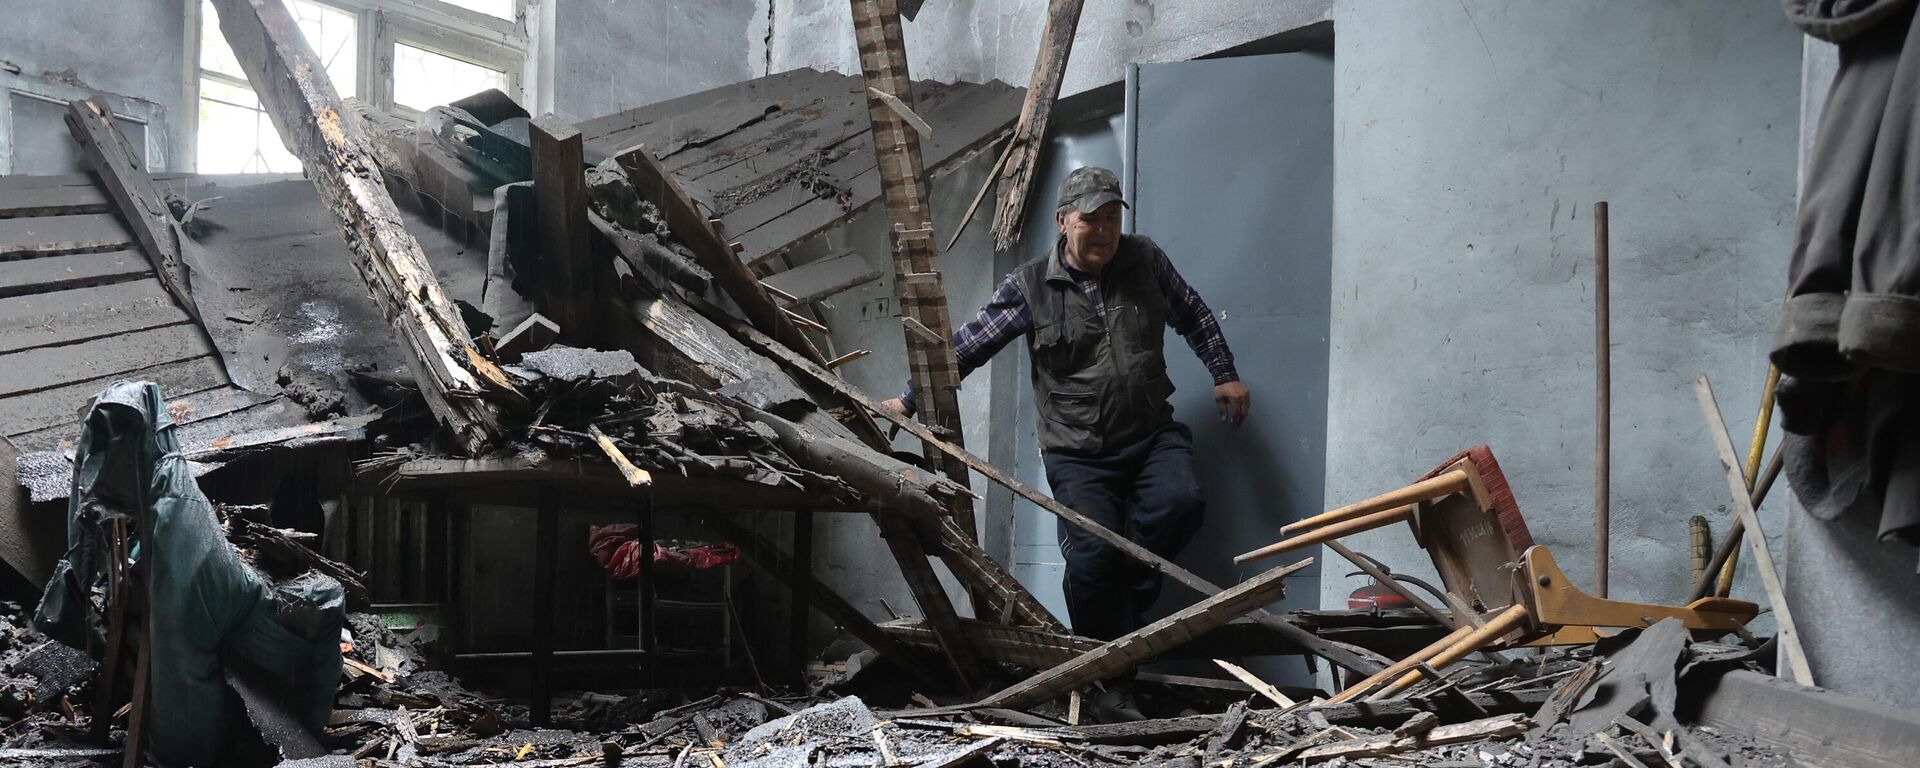 تداعيات قصف القوات المسلحة الأوكرانية في دونيتسك، جمهورية دونيتسك الشعبية 19 مايو 2022 - سبوتنيك عربي, 1920, 27.05.2022